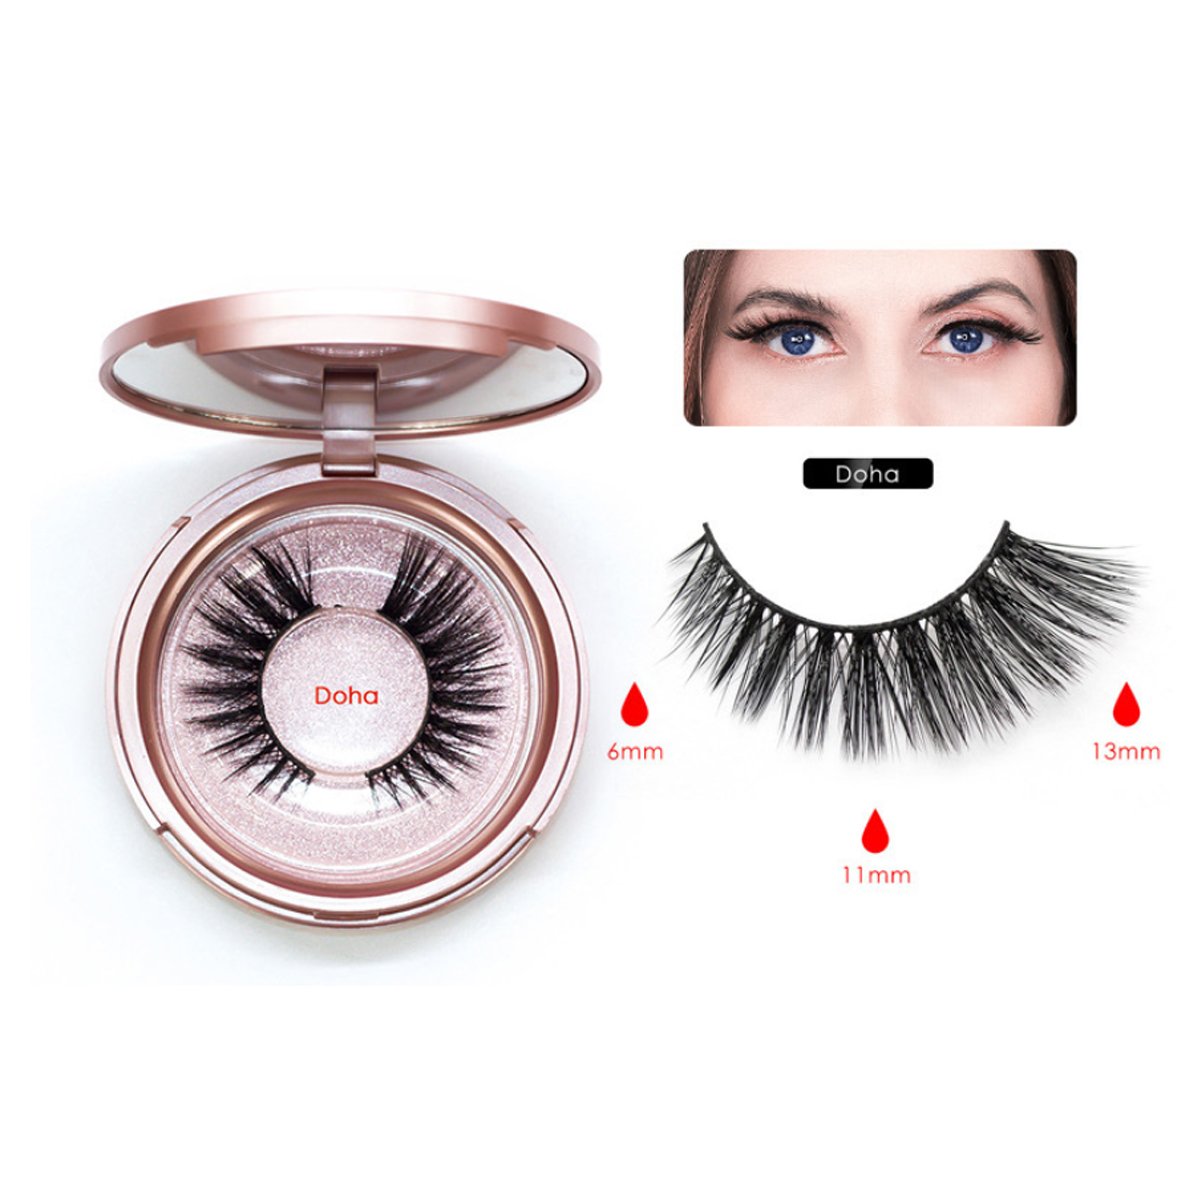 Magnetic Lash Kit  - Eyelashes, Eyeliner & Tweezer